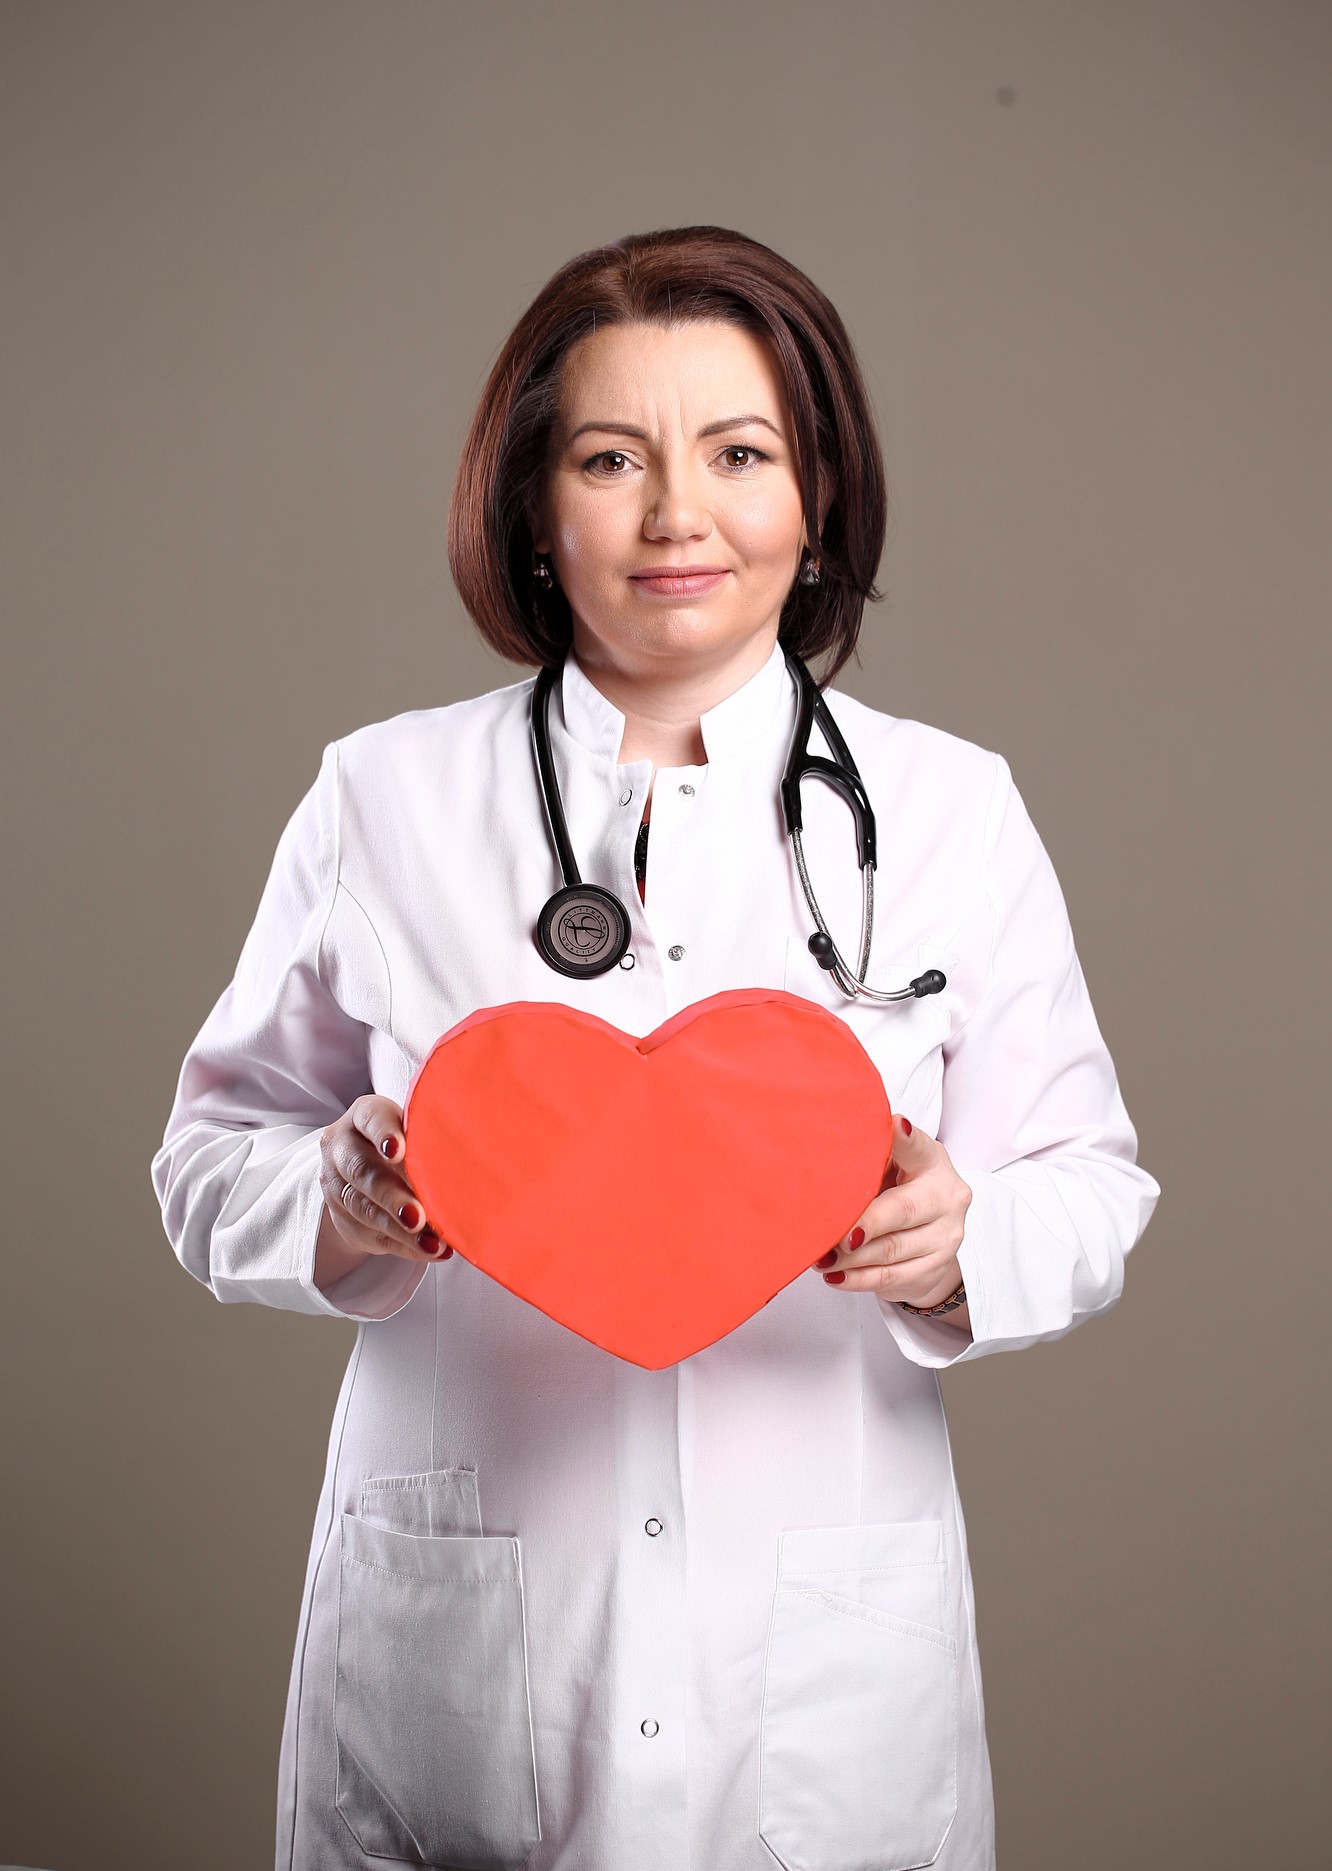 Despre bolile cardiace „la feminin”: „Pe glob sunt peste 3 miliarde de inimi care bat și suferă în mod aparte”